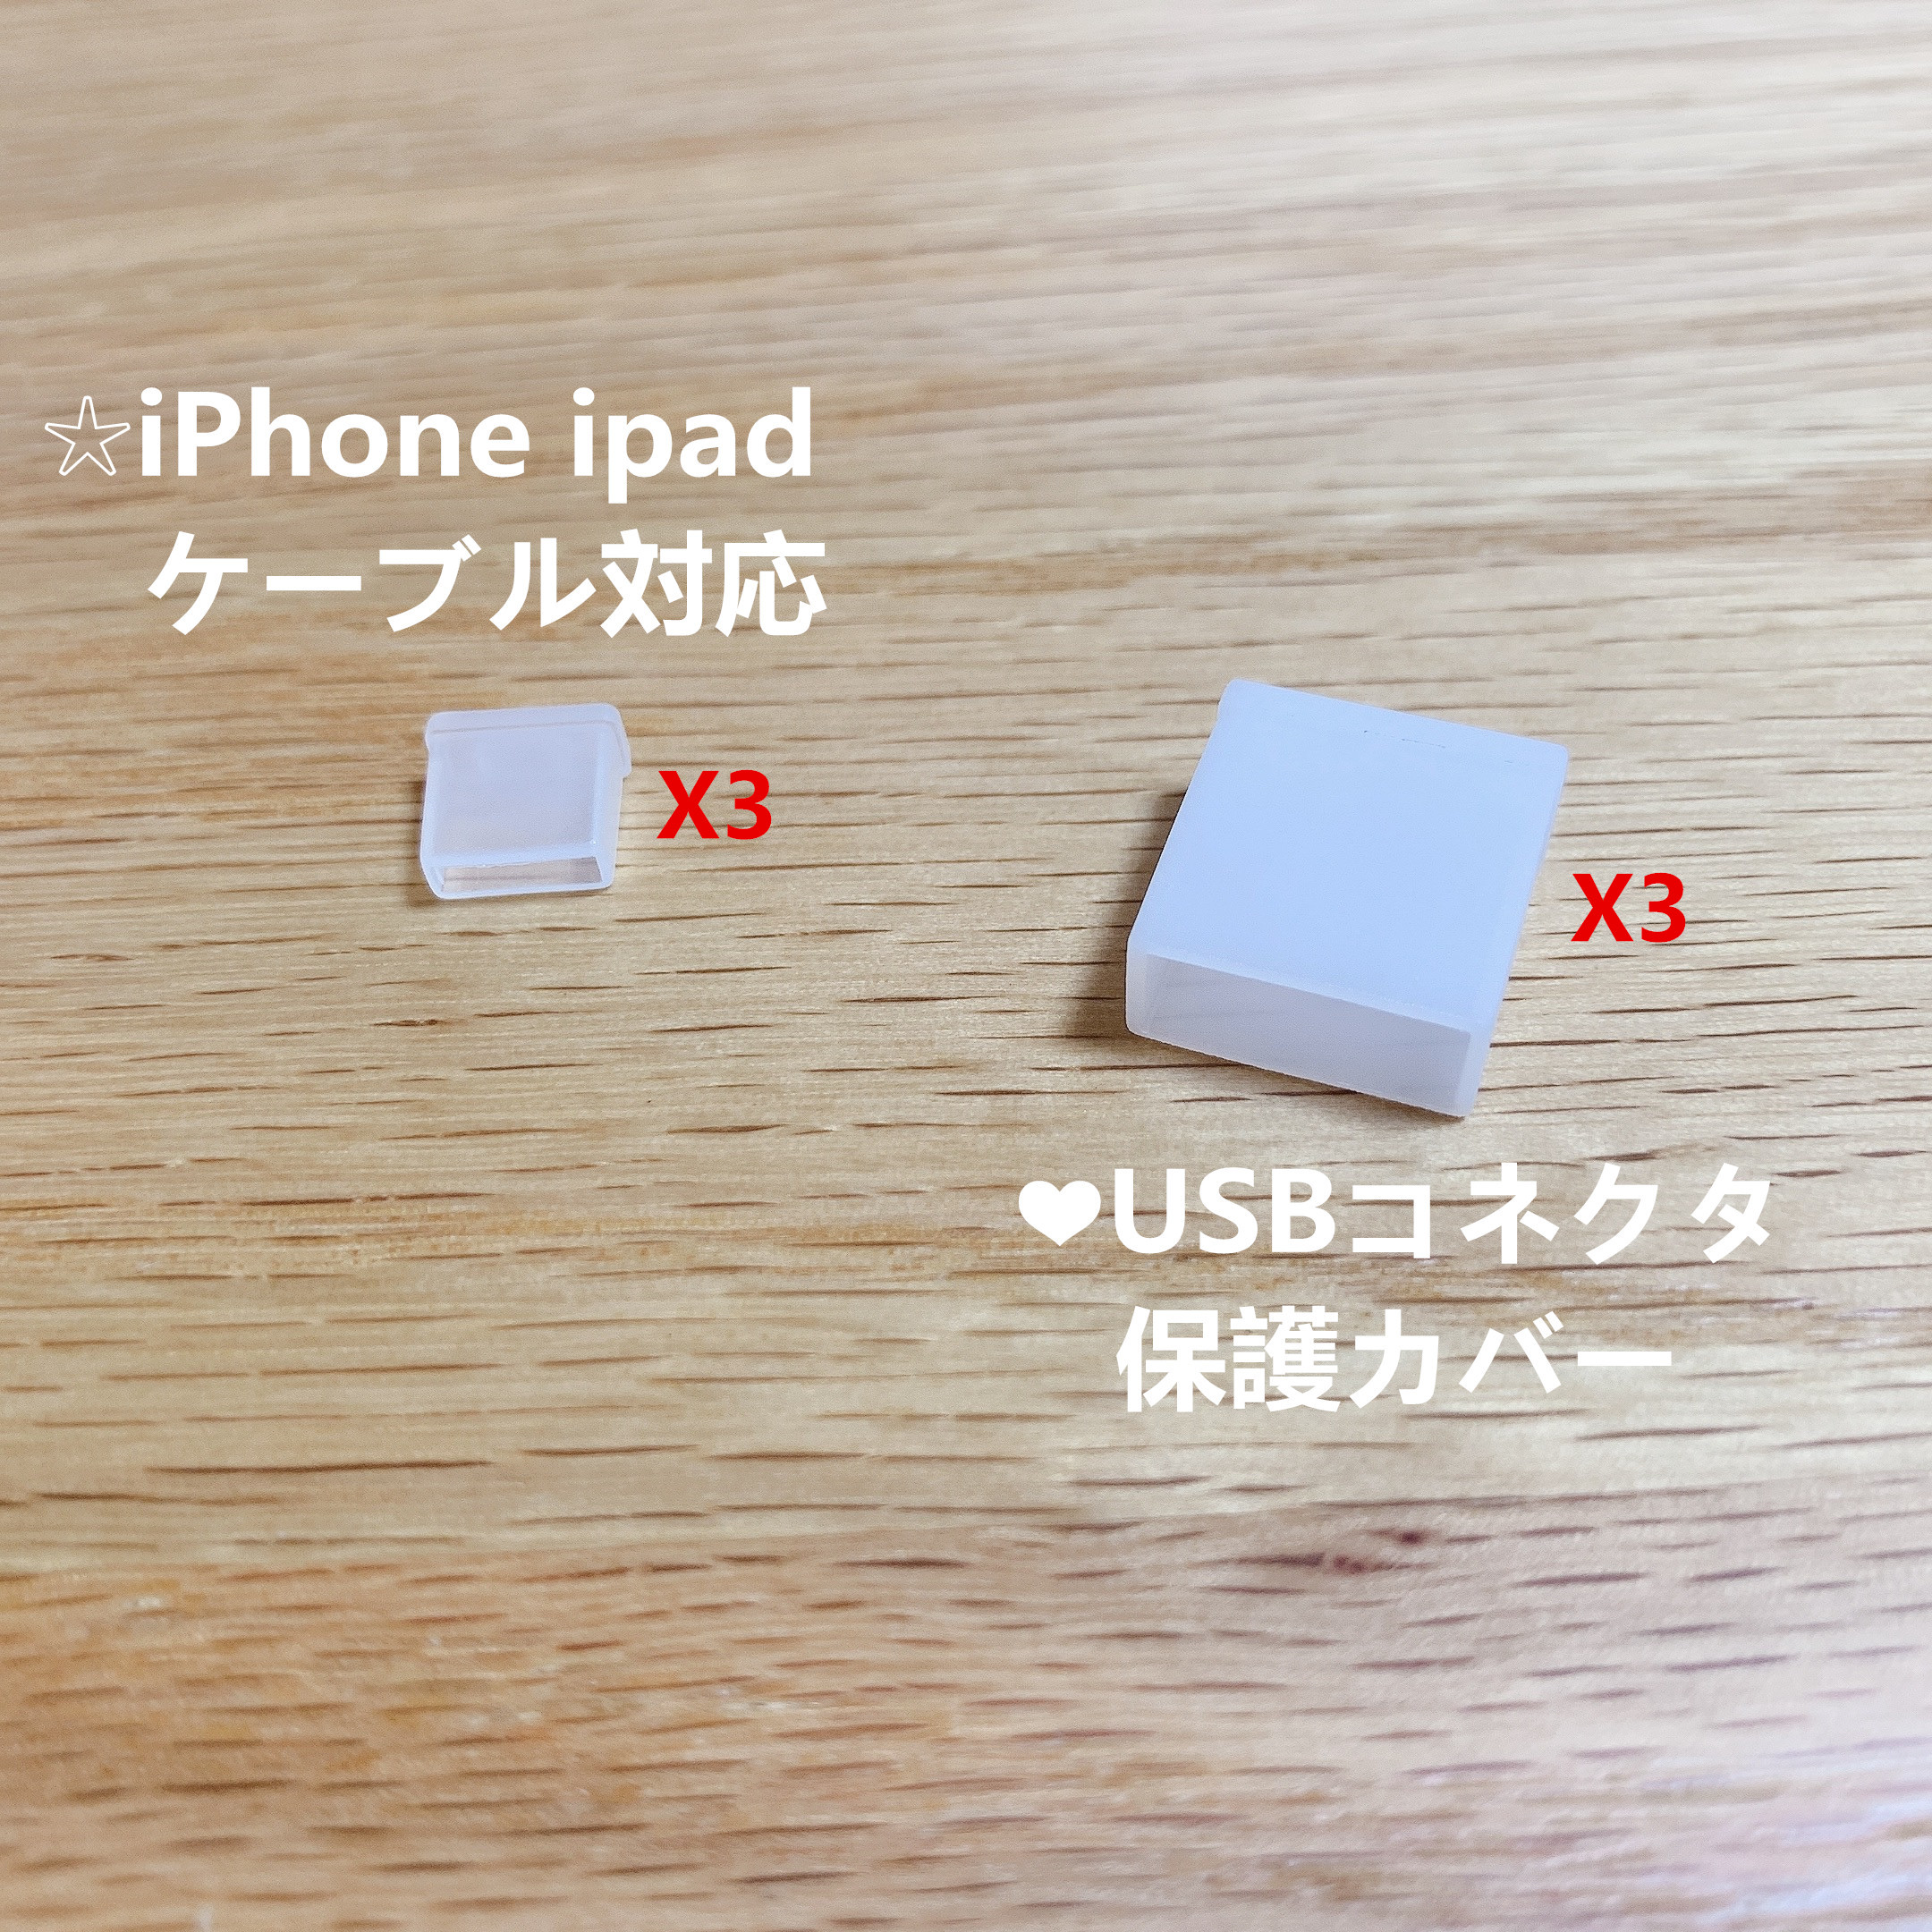 lighting to USB コネクタ保護カバー 6個3セット キャップ PE製 iPhone ケーブル 3.0 信託 USB-Aタイプ USB2.0 idiskk-USB 対応 デポー ipad 3.1